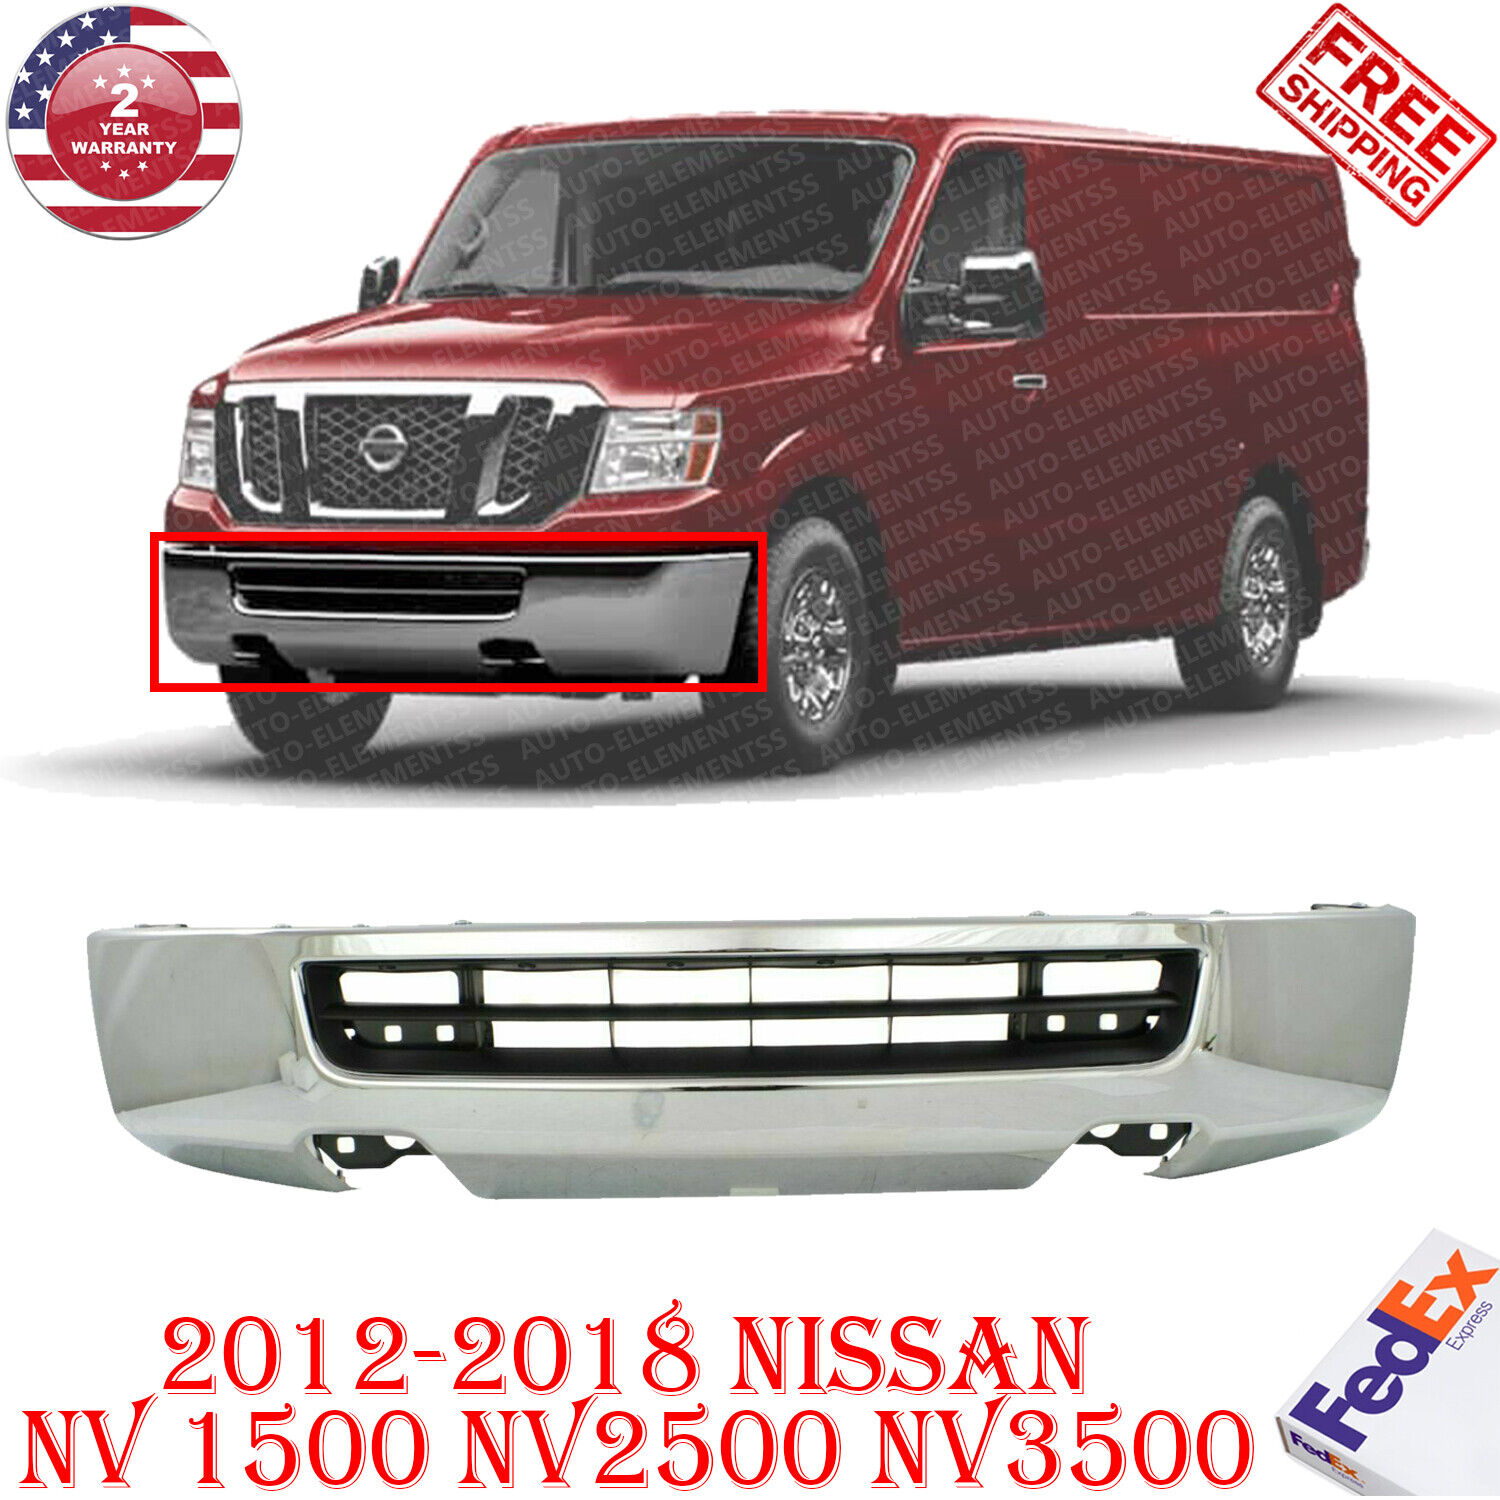 New Front Bumper Chrome Steel For 2012-2018 Nissan Cargo Van NV2500 NV3500  19962608278 | eBay